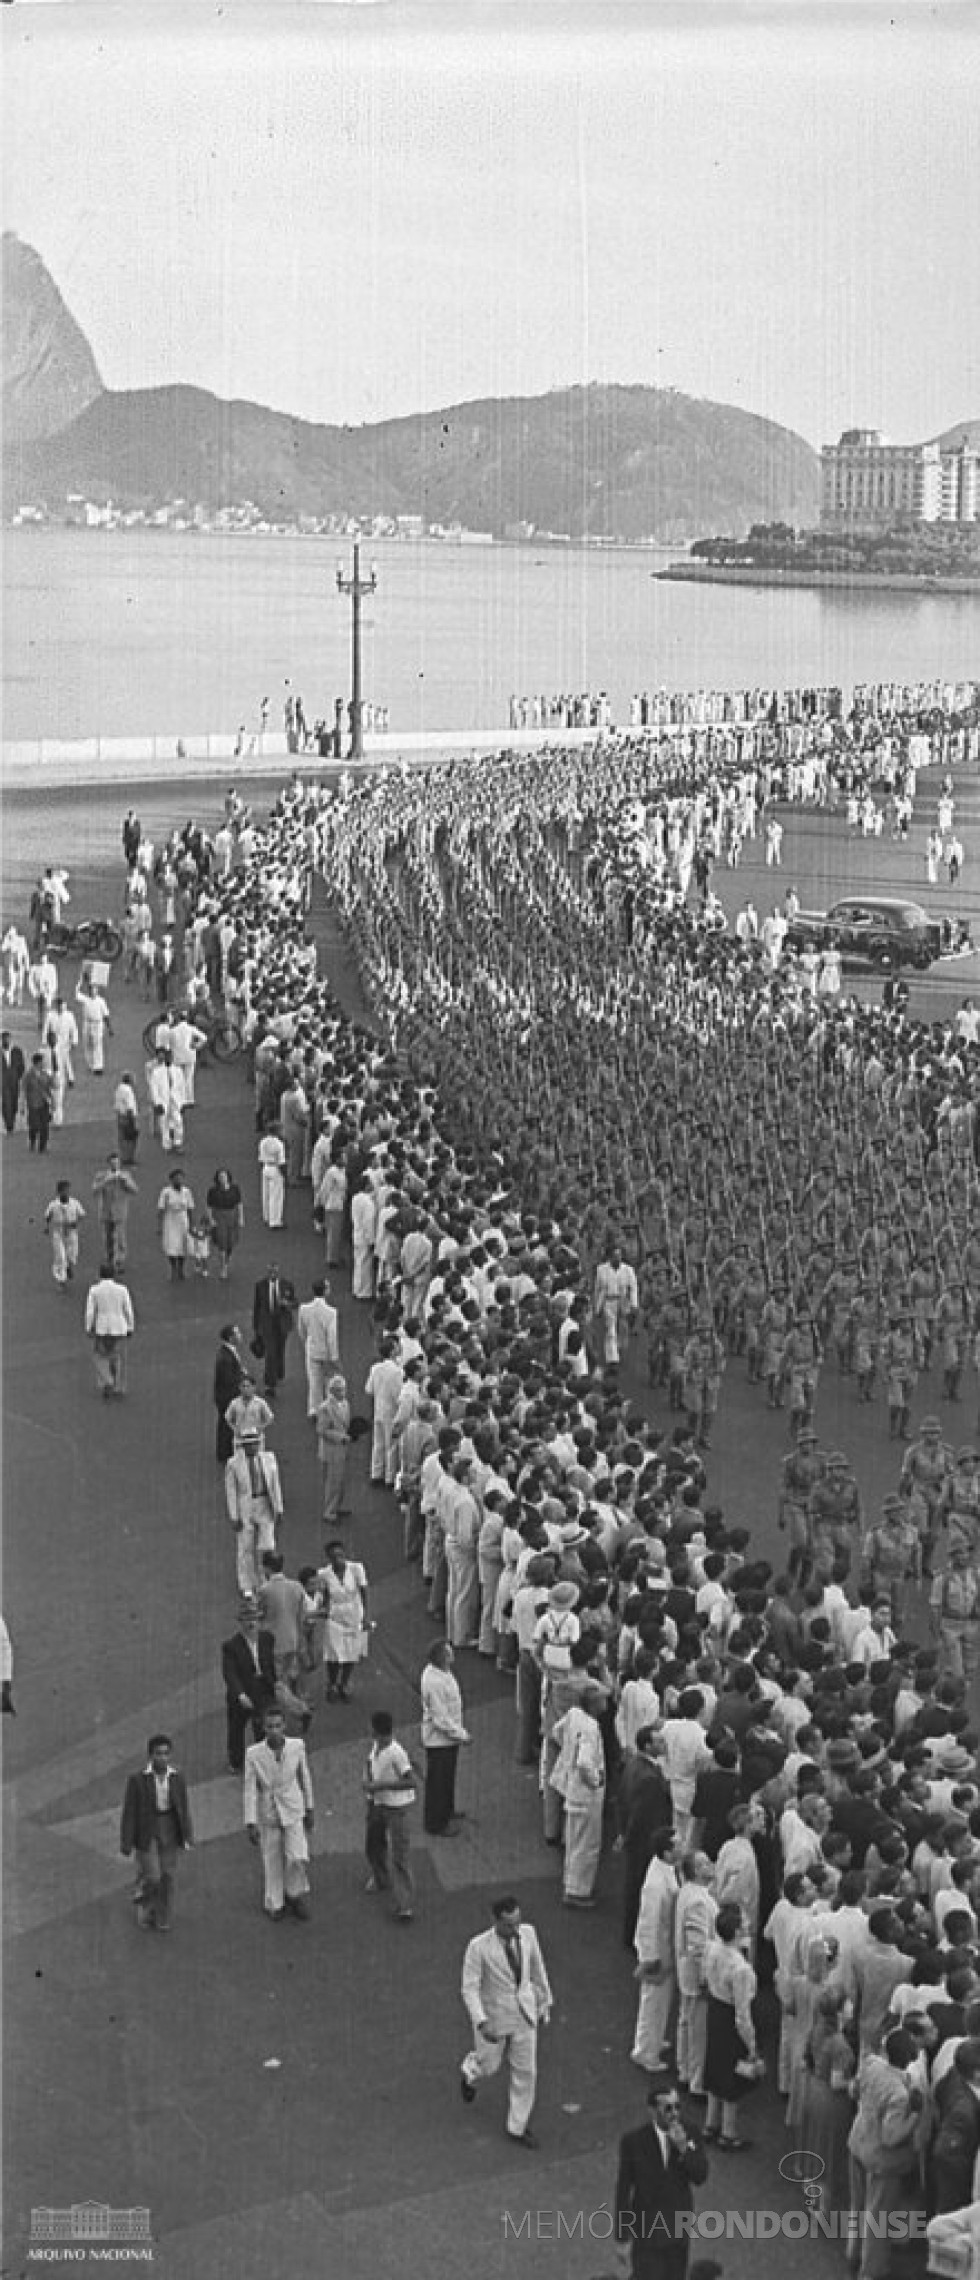 Desfile da Força Expedicionária Brasileira (FEB),  na cidade do Rio de Janeiro, em 1944, antes de embarcar para os campos de batalha na Itália, na Segunda Guerra Mundial.
Imagem: Acervo Arquivo Nacional - FOTO 4  - 